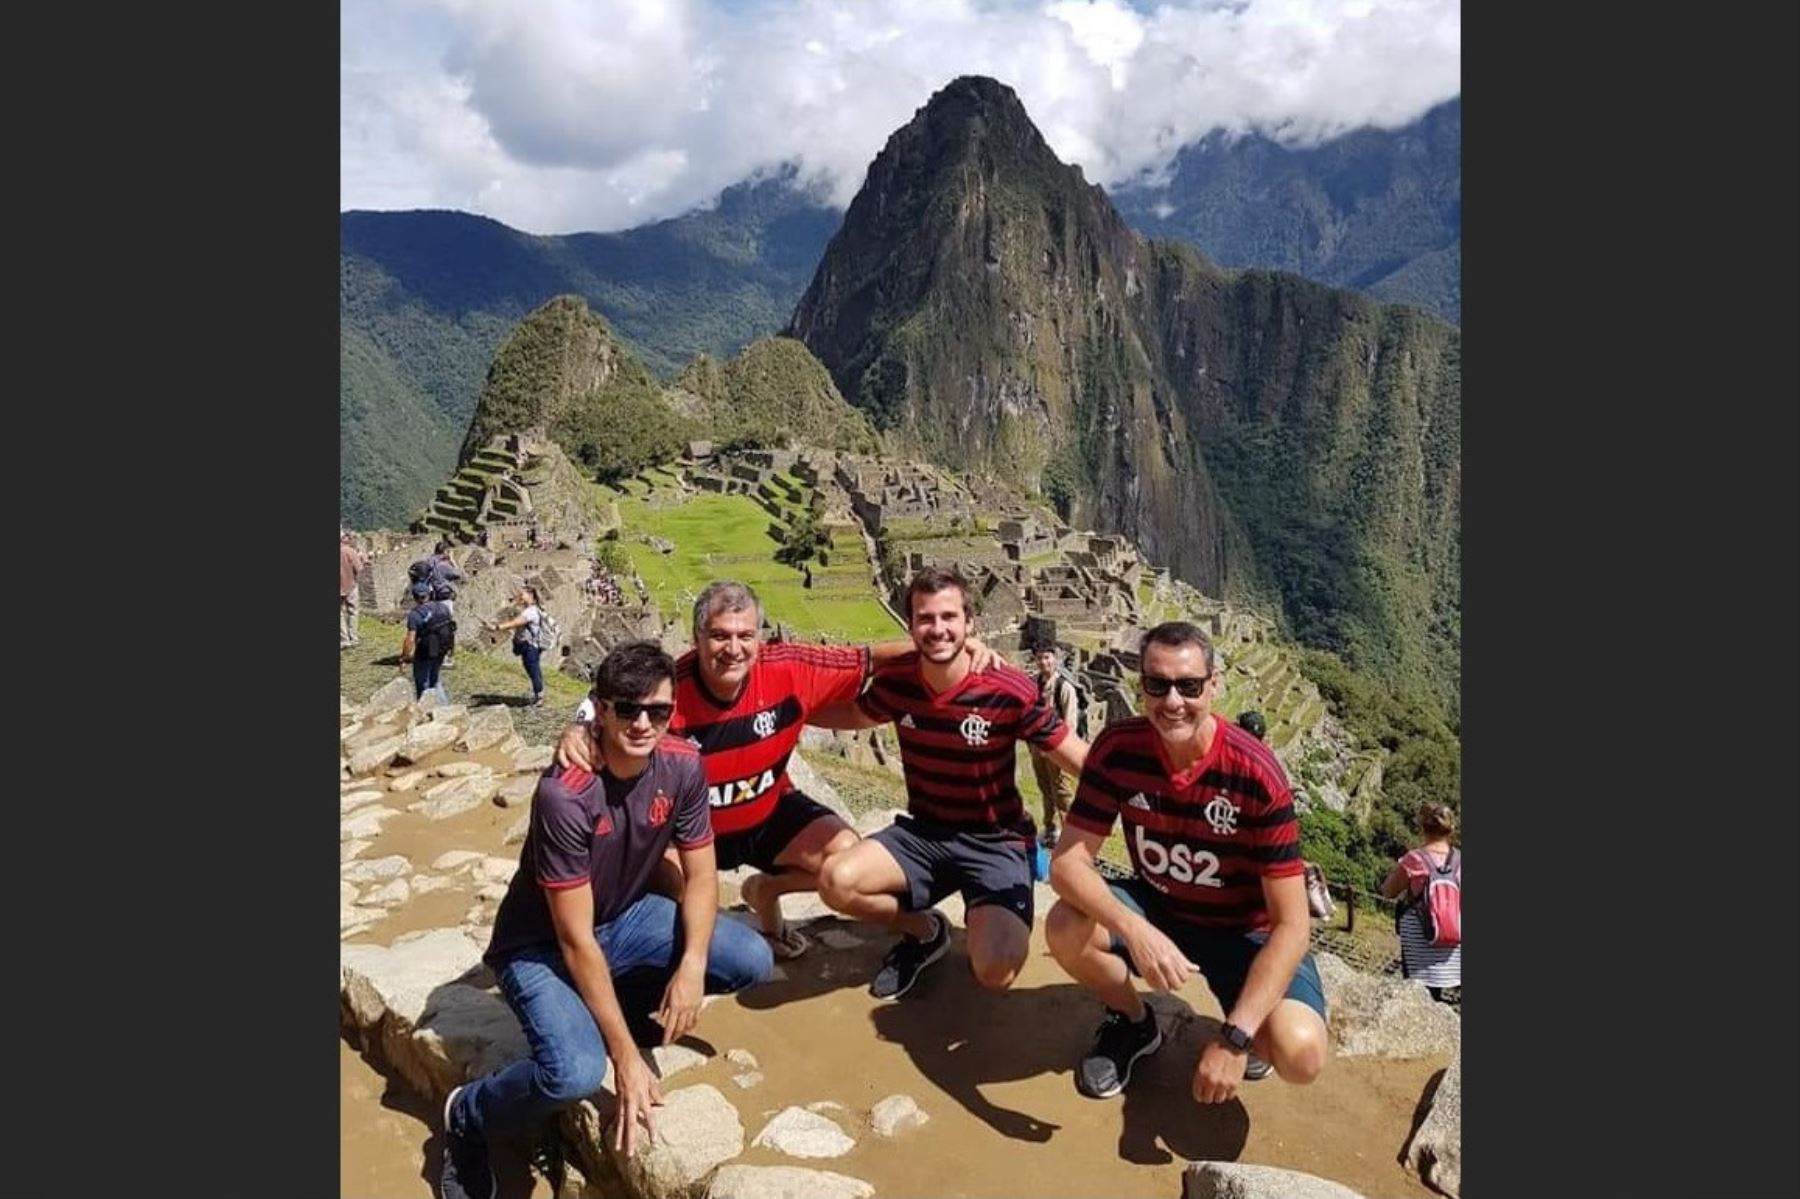 Hinchas del Flamengo y River Plate hacen turismo en Machu Picchu antes de viajar a Lima para asistir a la final única de la Copa Libertadores. Foto: Paulino Quispe/Facebook.